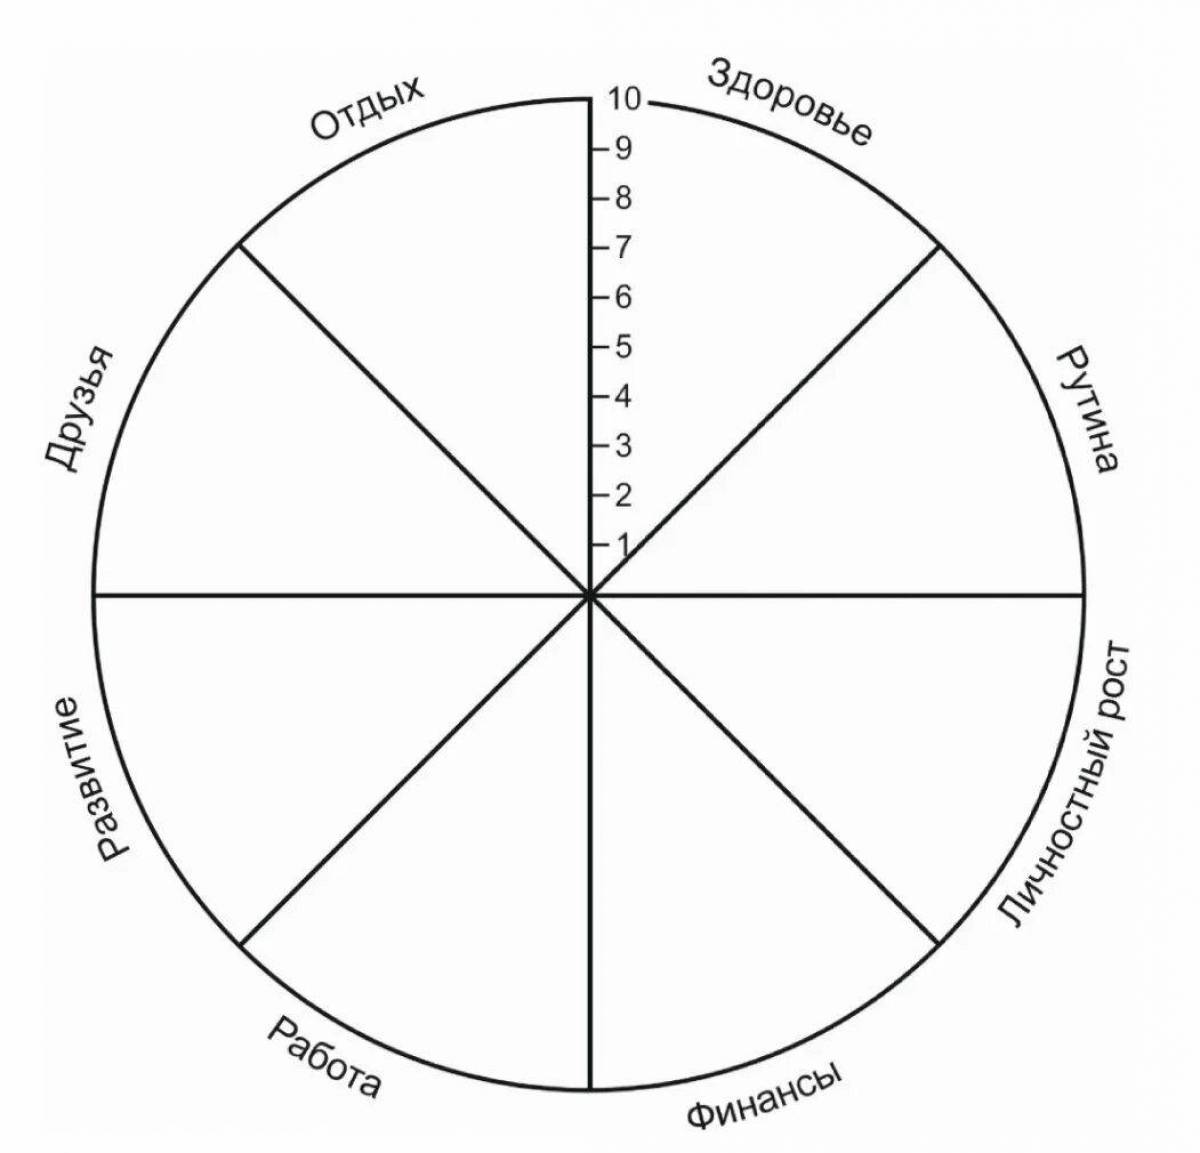 Круг времени жизни. Колесо жизненного баланса 8 сфер. Схема колеса жизненного баланса. Коле/о жизненного баланса. Колесо жизни, баланс жизни (8 основных сфер).